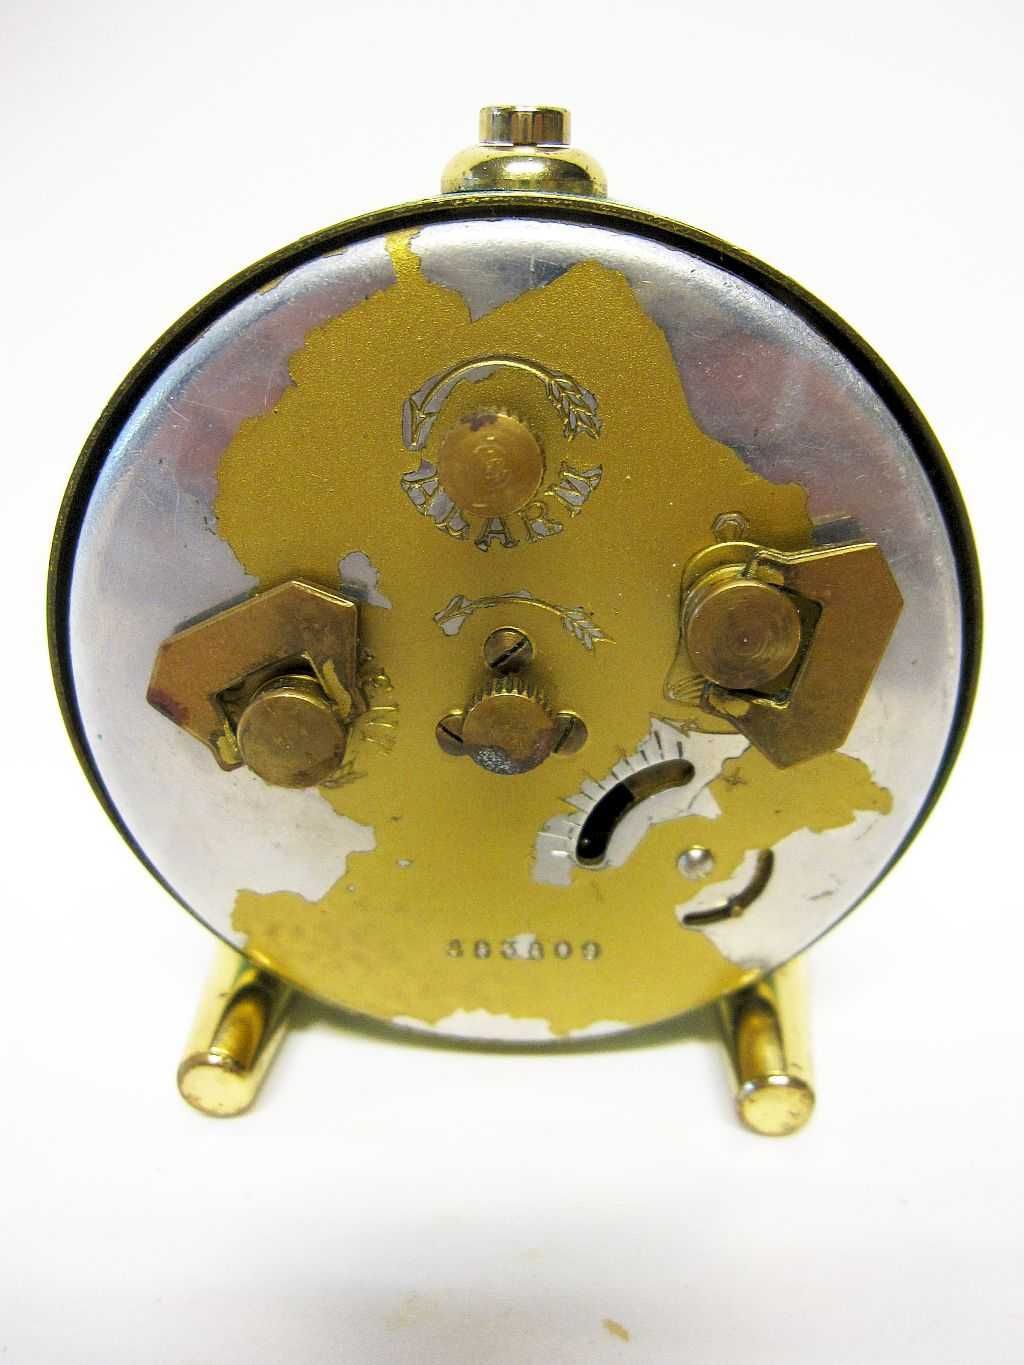 Despertador vintage dos anos 50 - AMYRAL Fab. Looping 7 Rubis funciona